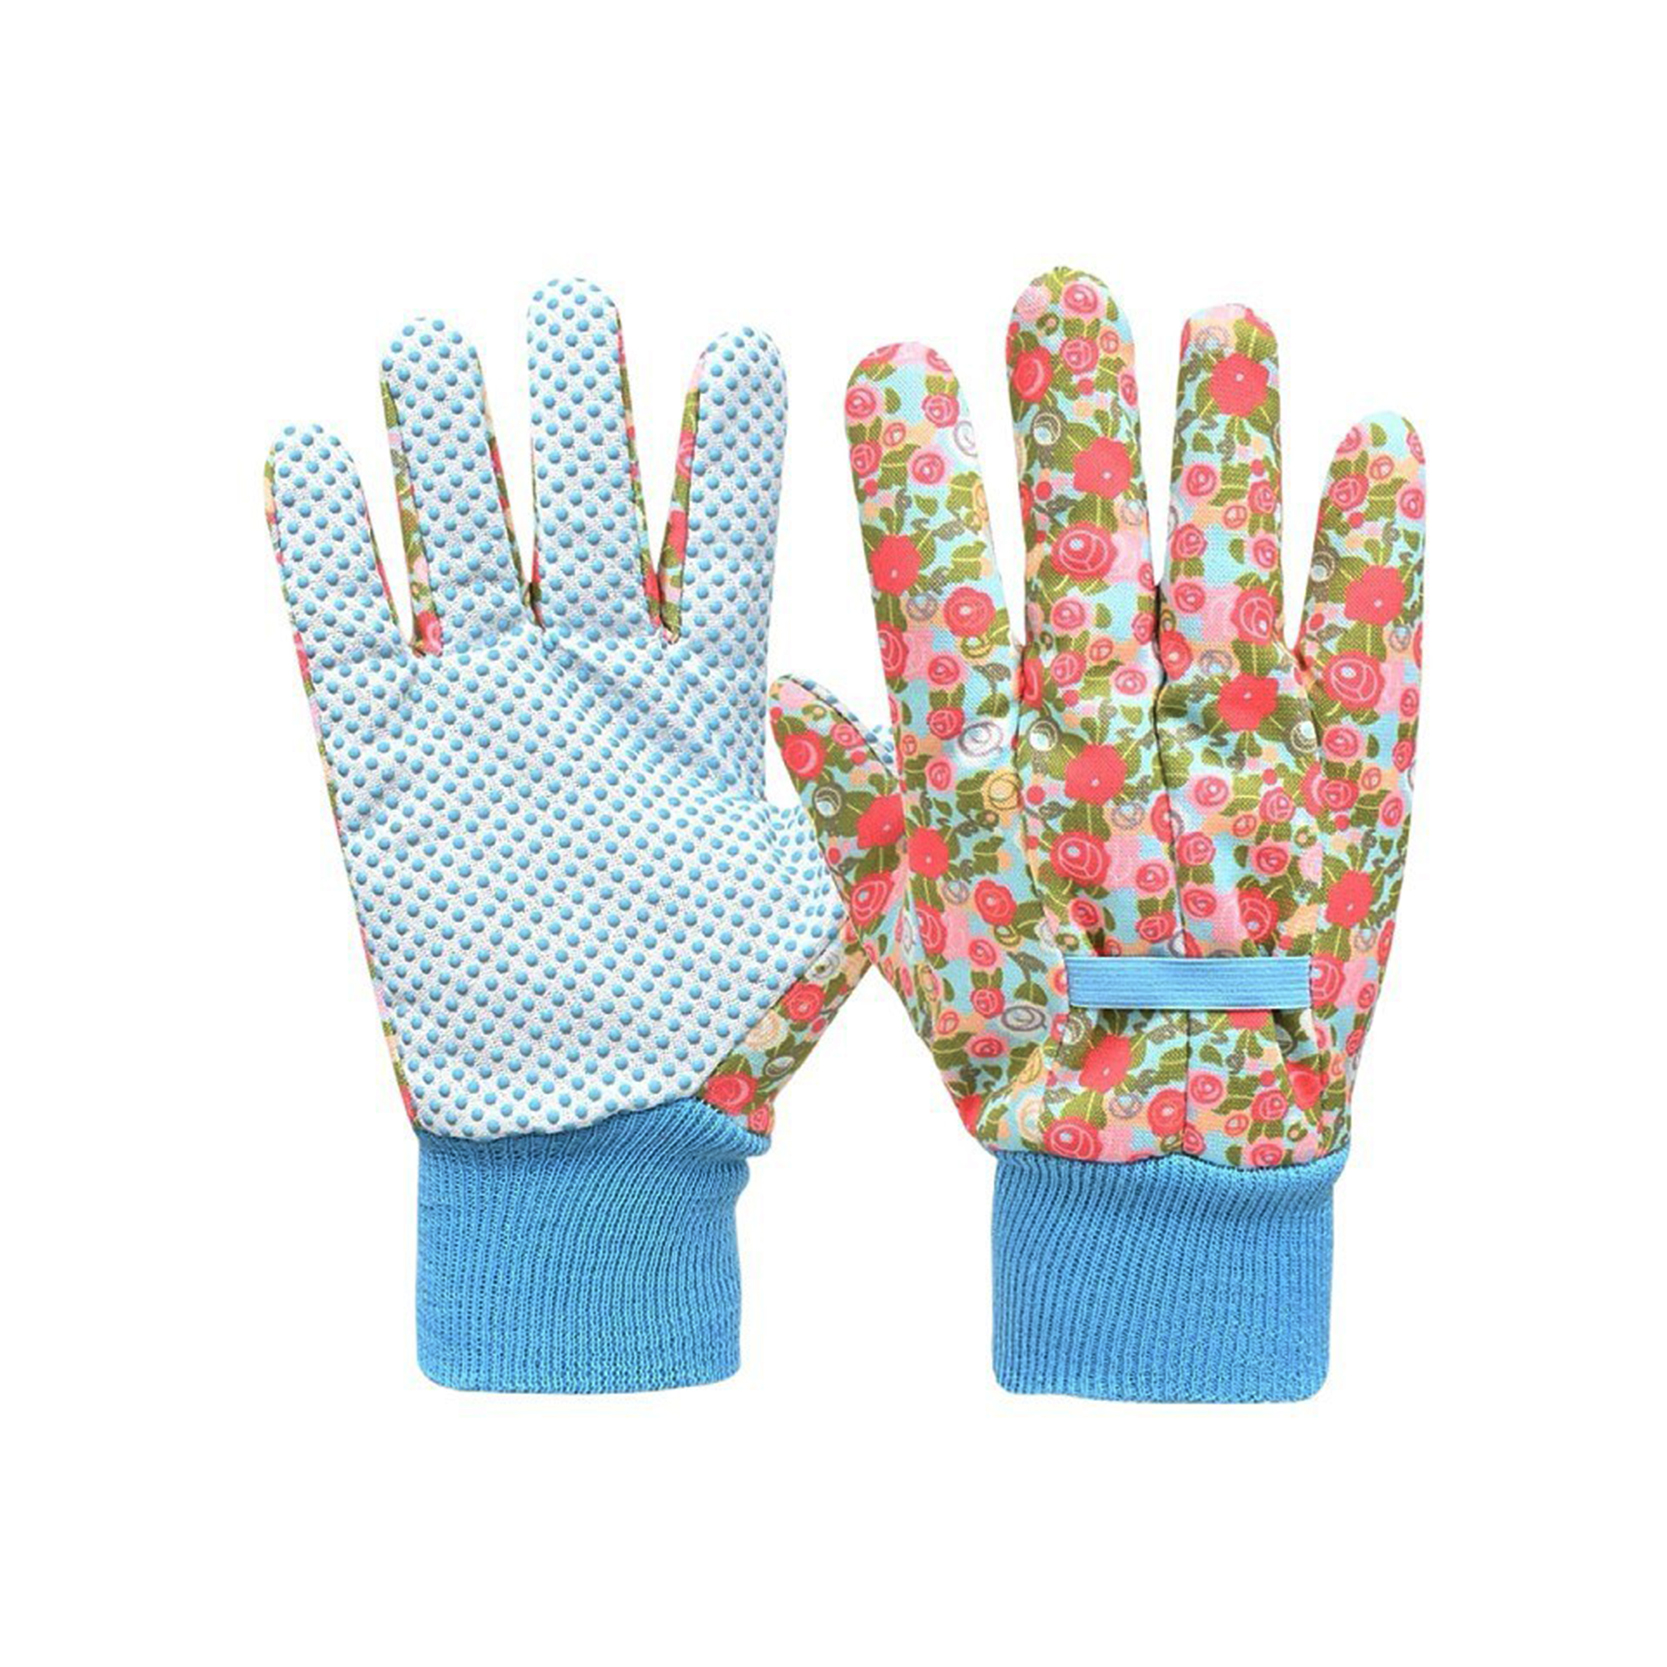 Pvc bodkované bavlnené rukavice Bodkované rukavice Pvc bodkované pracovné rukavice/guantes De Algodon Con Puntos,Guantes De Trabajo